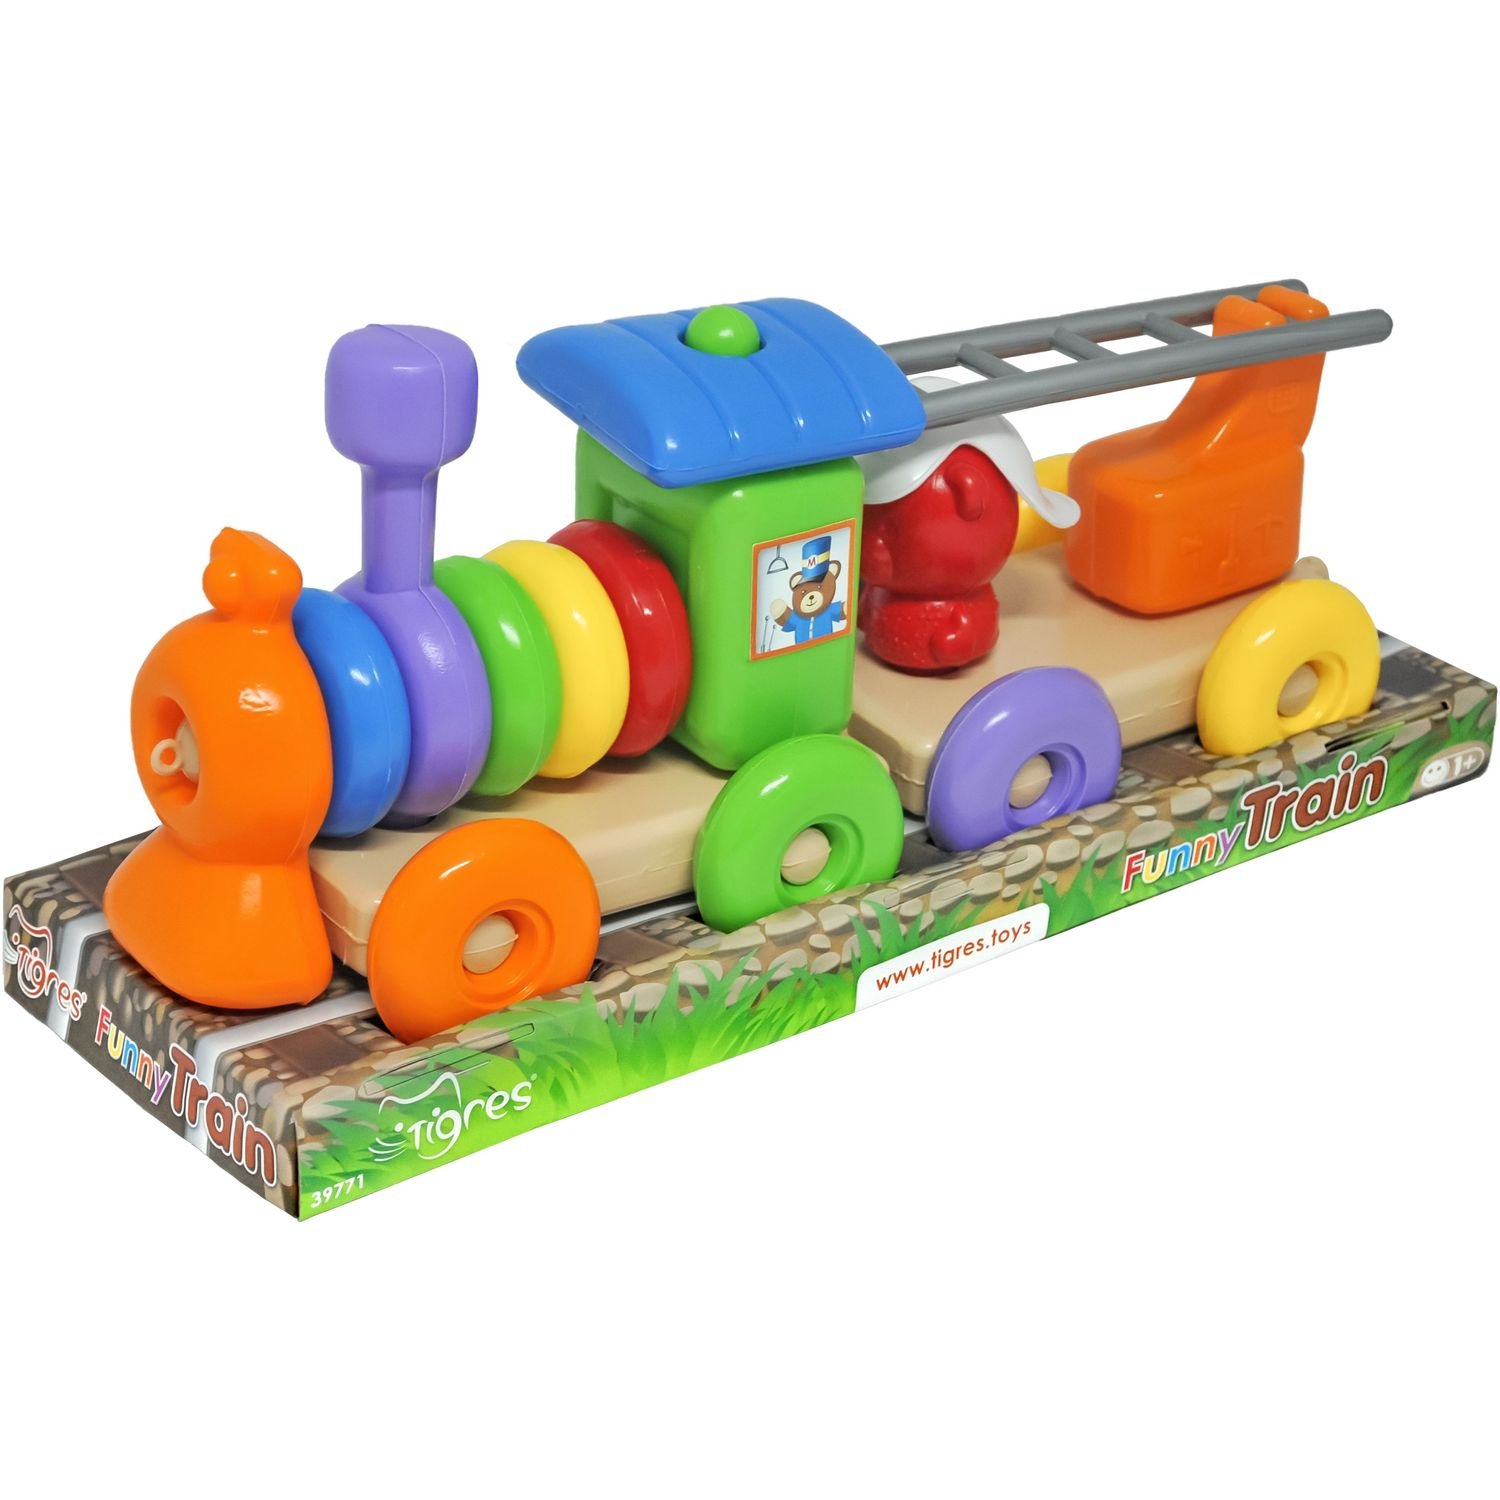 Развивающая игрушка Tigres Funny train, 23 элемента (39771) - фото 1